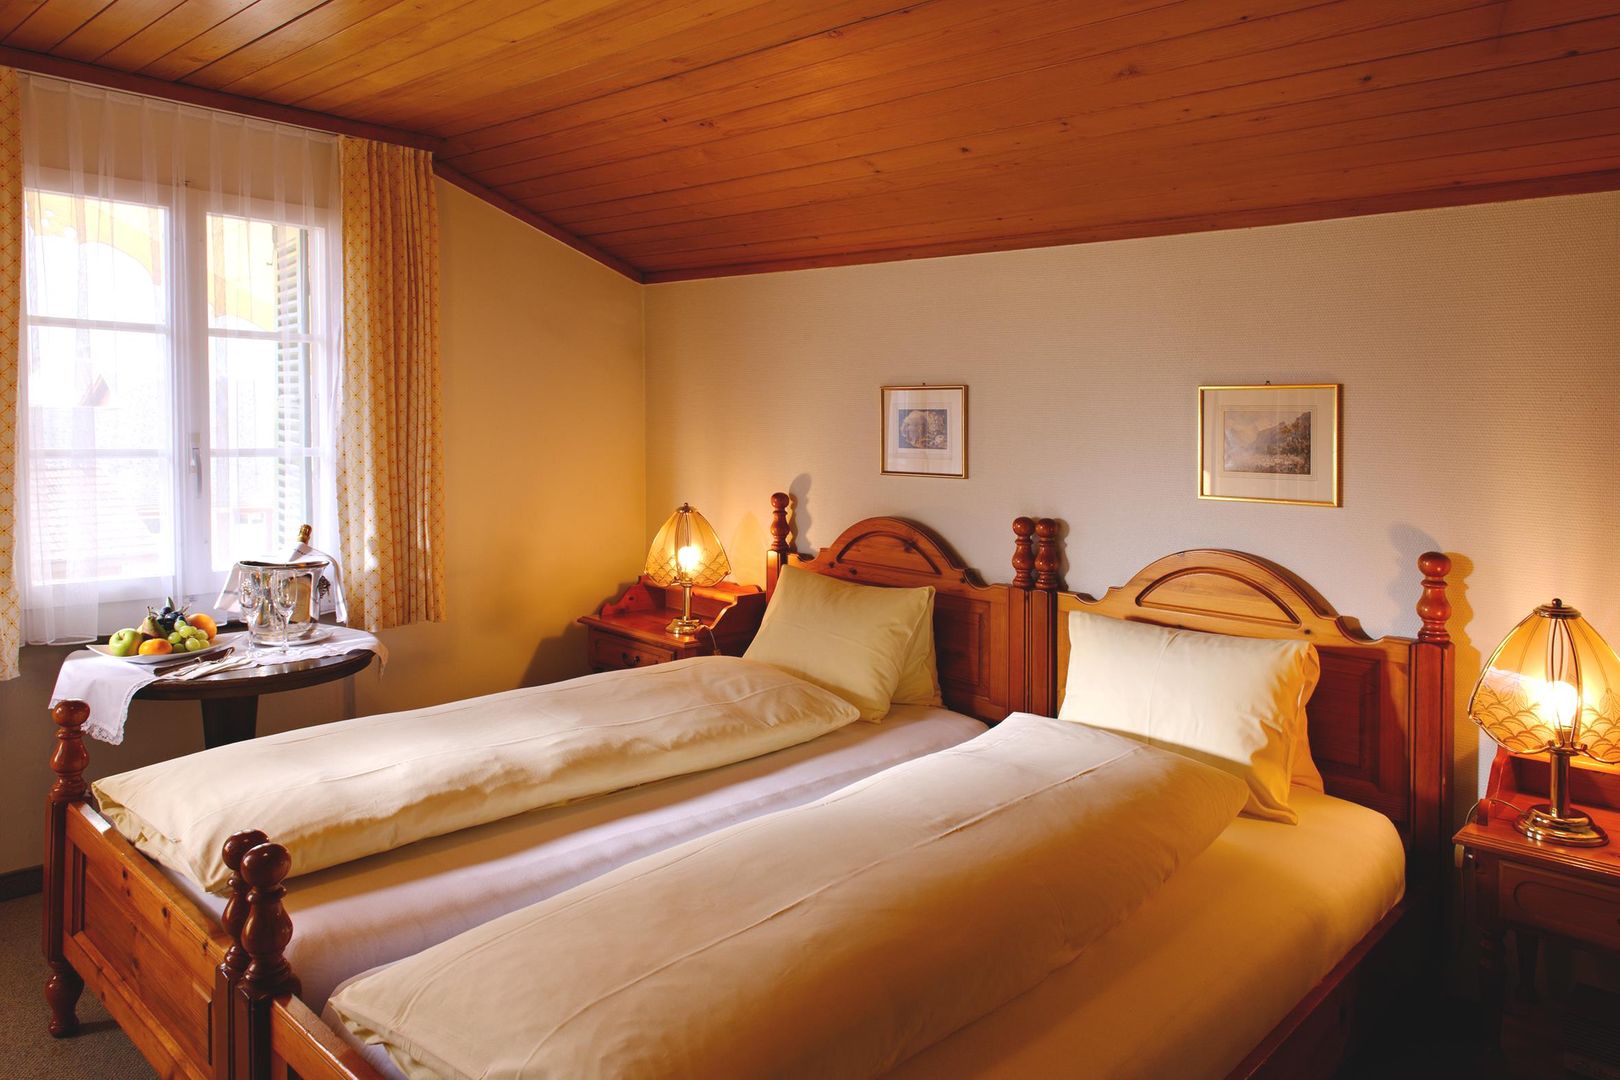 Heerlijke skivakantie Jungfrau Regio ❄ Hotel Bären